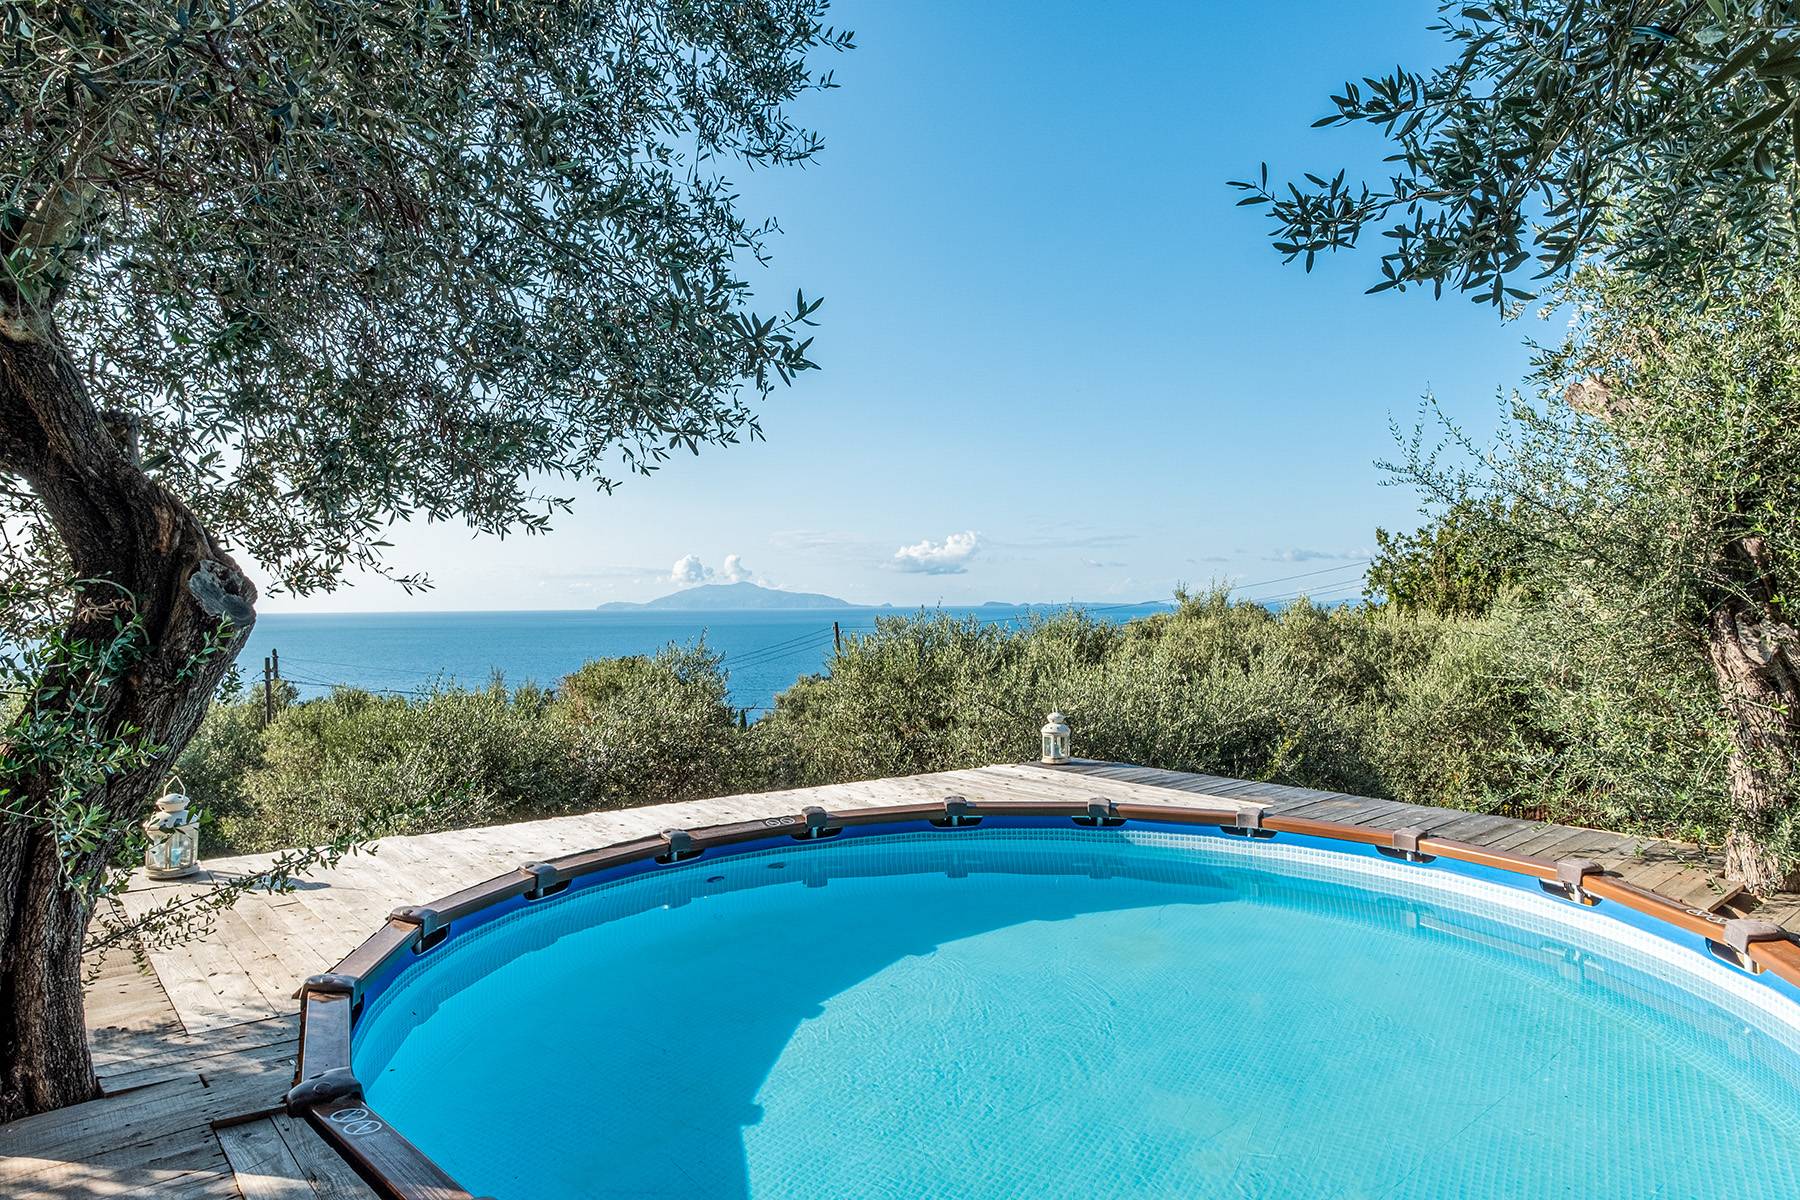 Villa in Vendita a Capri: 5 locali, 200 mq - Foto 2